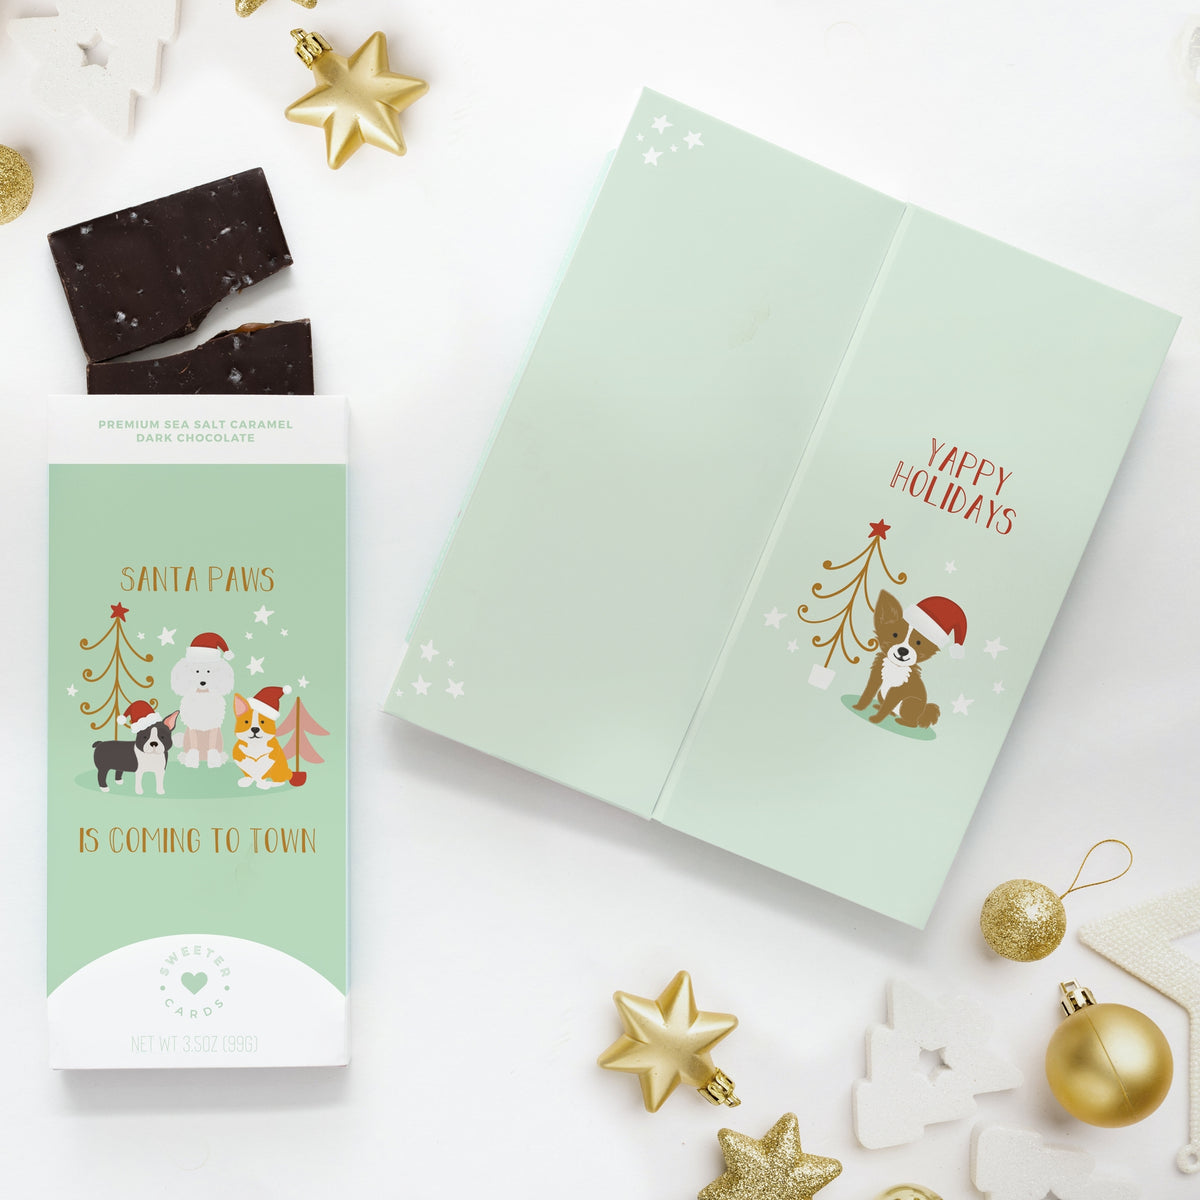 Santa Paws Holiday Card + Chocolate Bar